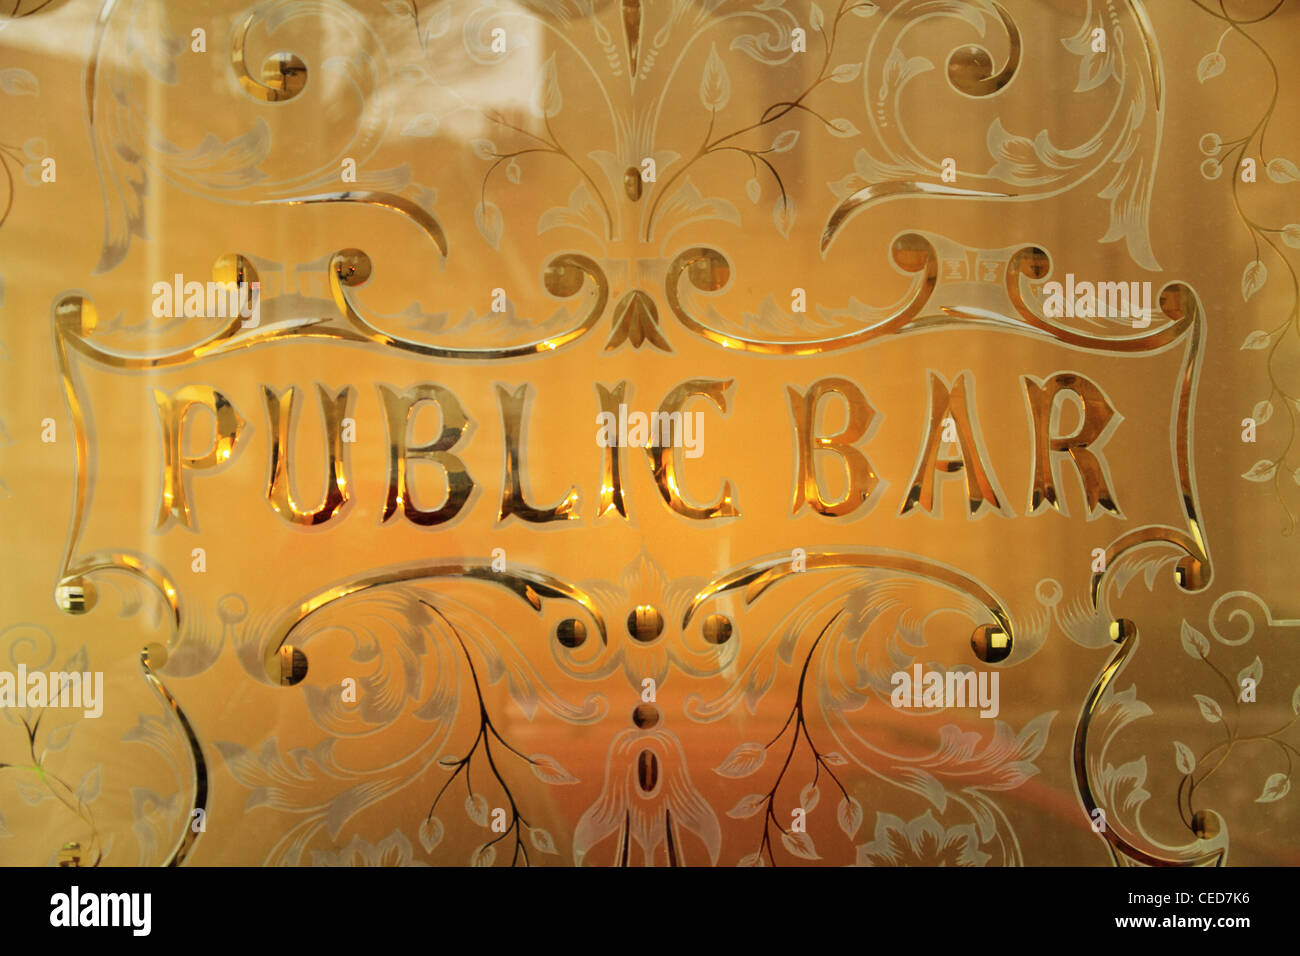 verzierten alten Eingang aus Holz Holz Haustür zu einer private öffentliche Bar Pub uk Milchglas Fenster Gastwirtschaft Stockfoto